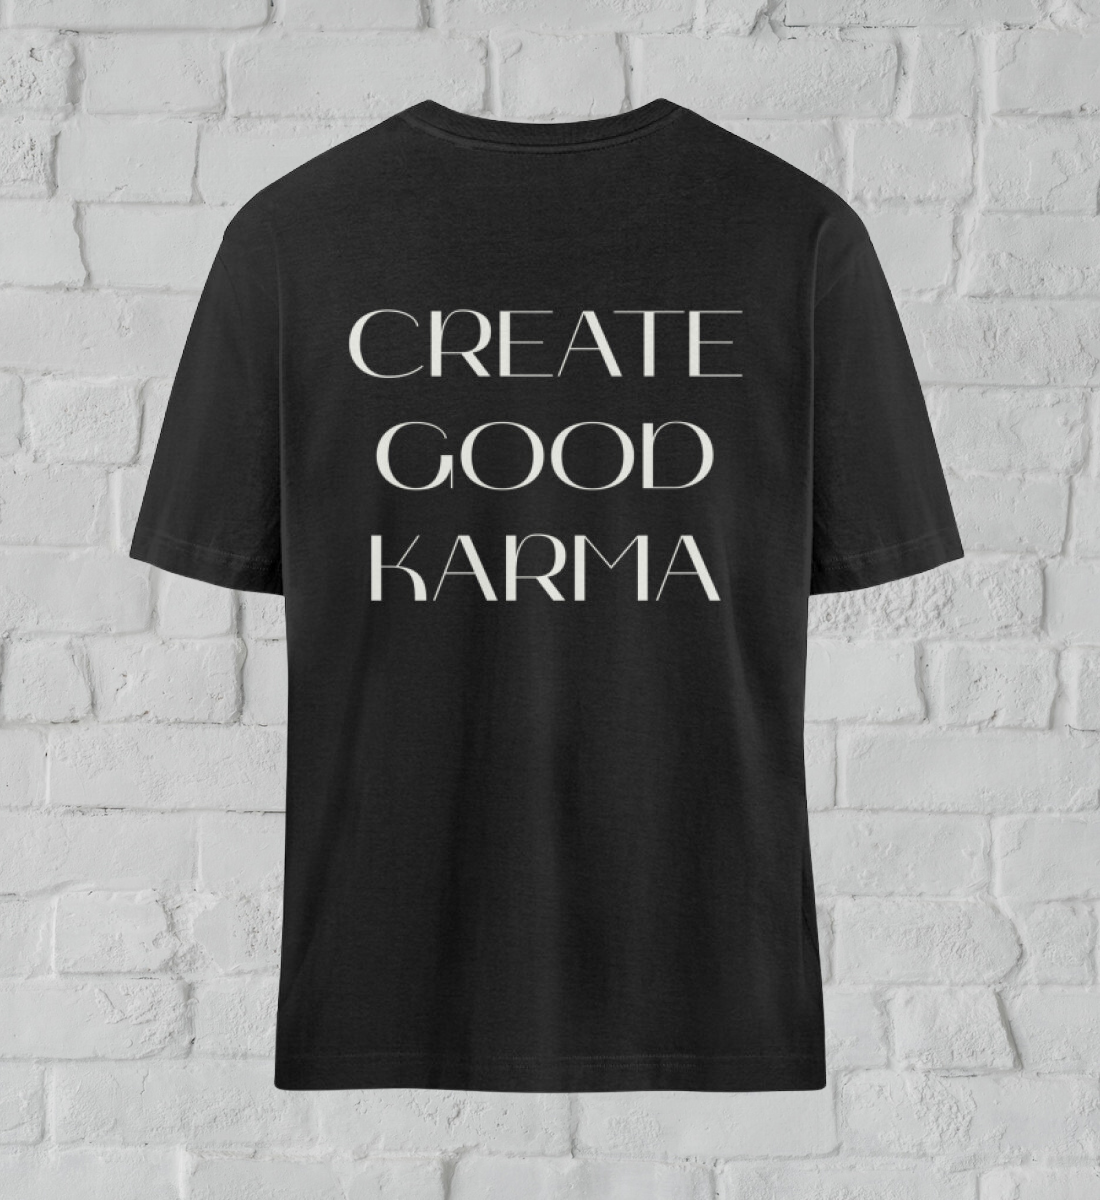 good karma l yoga t-shirt schwarz l bio shirt l ausgefallene yoga kleidung l nachhaltig und umweltfreundlich leben